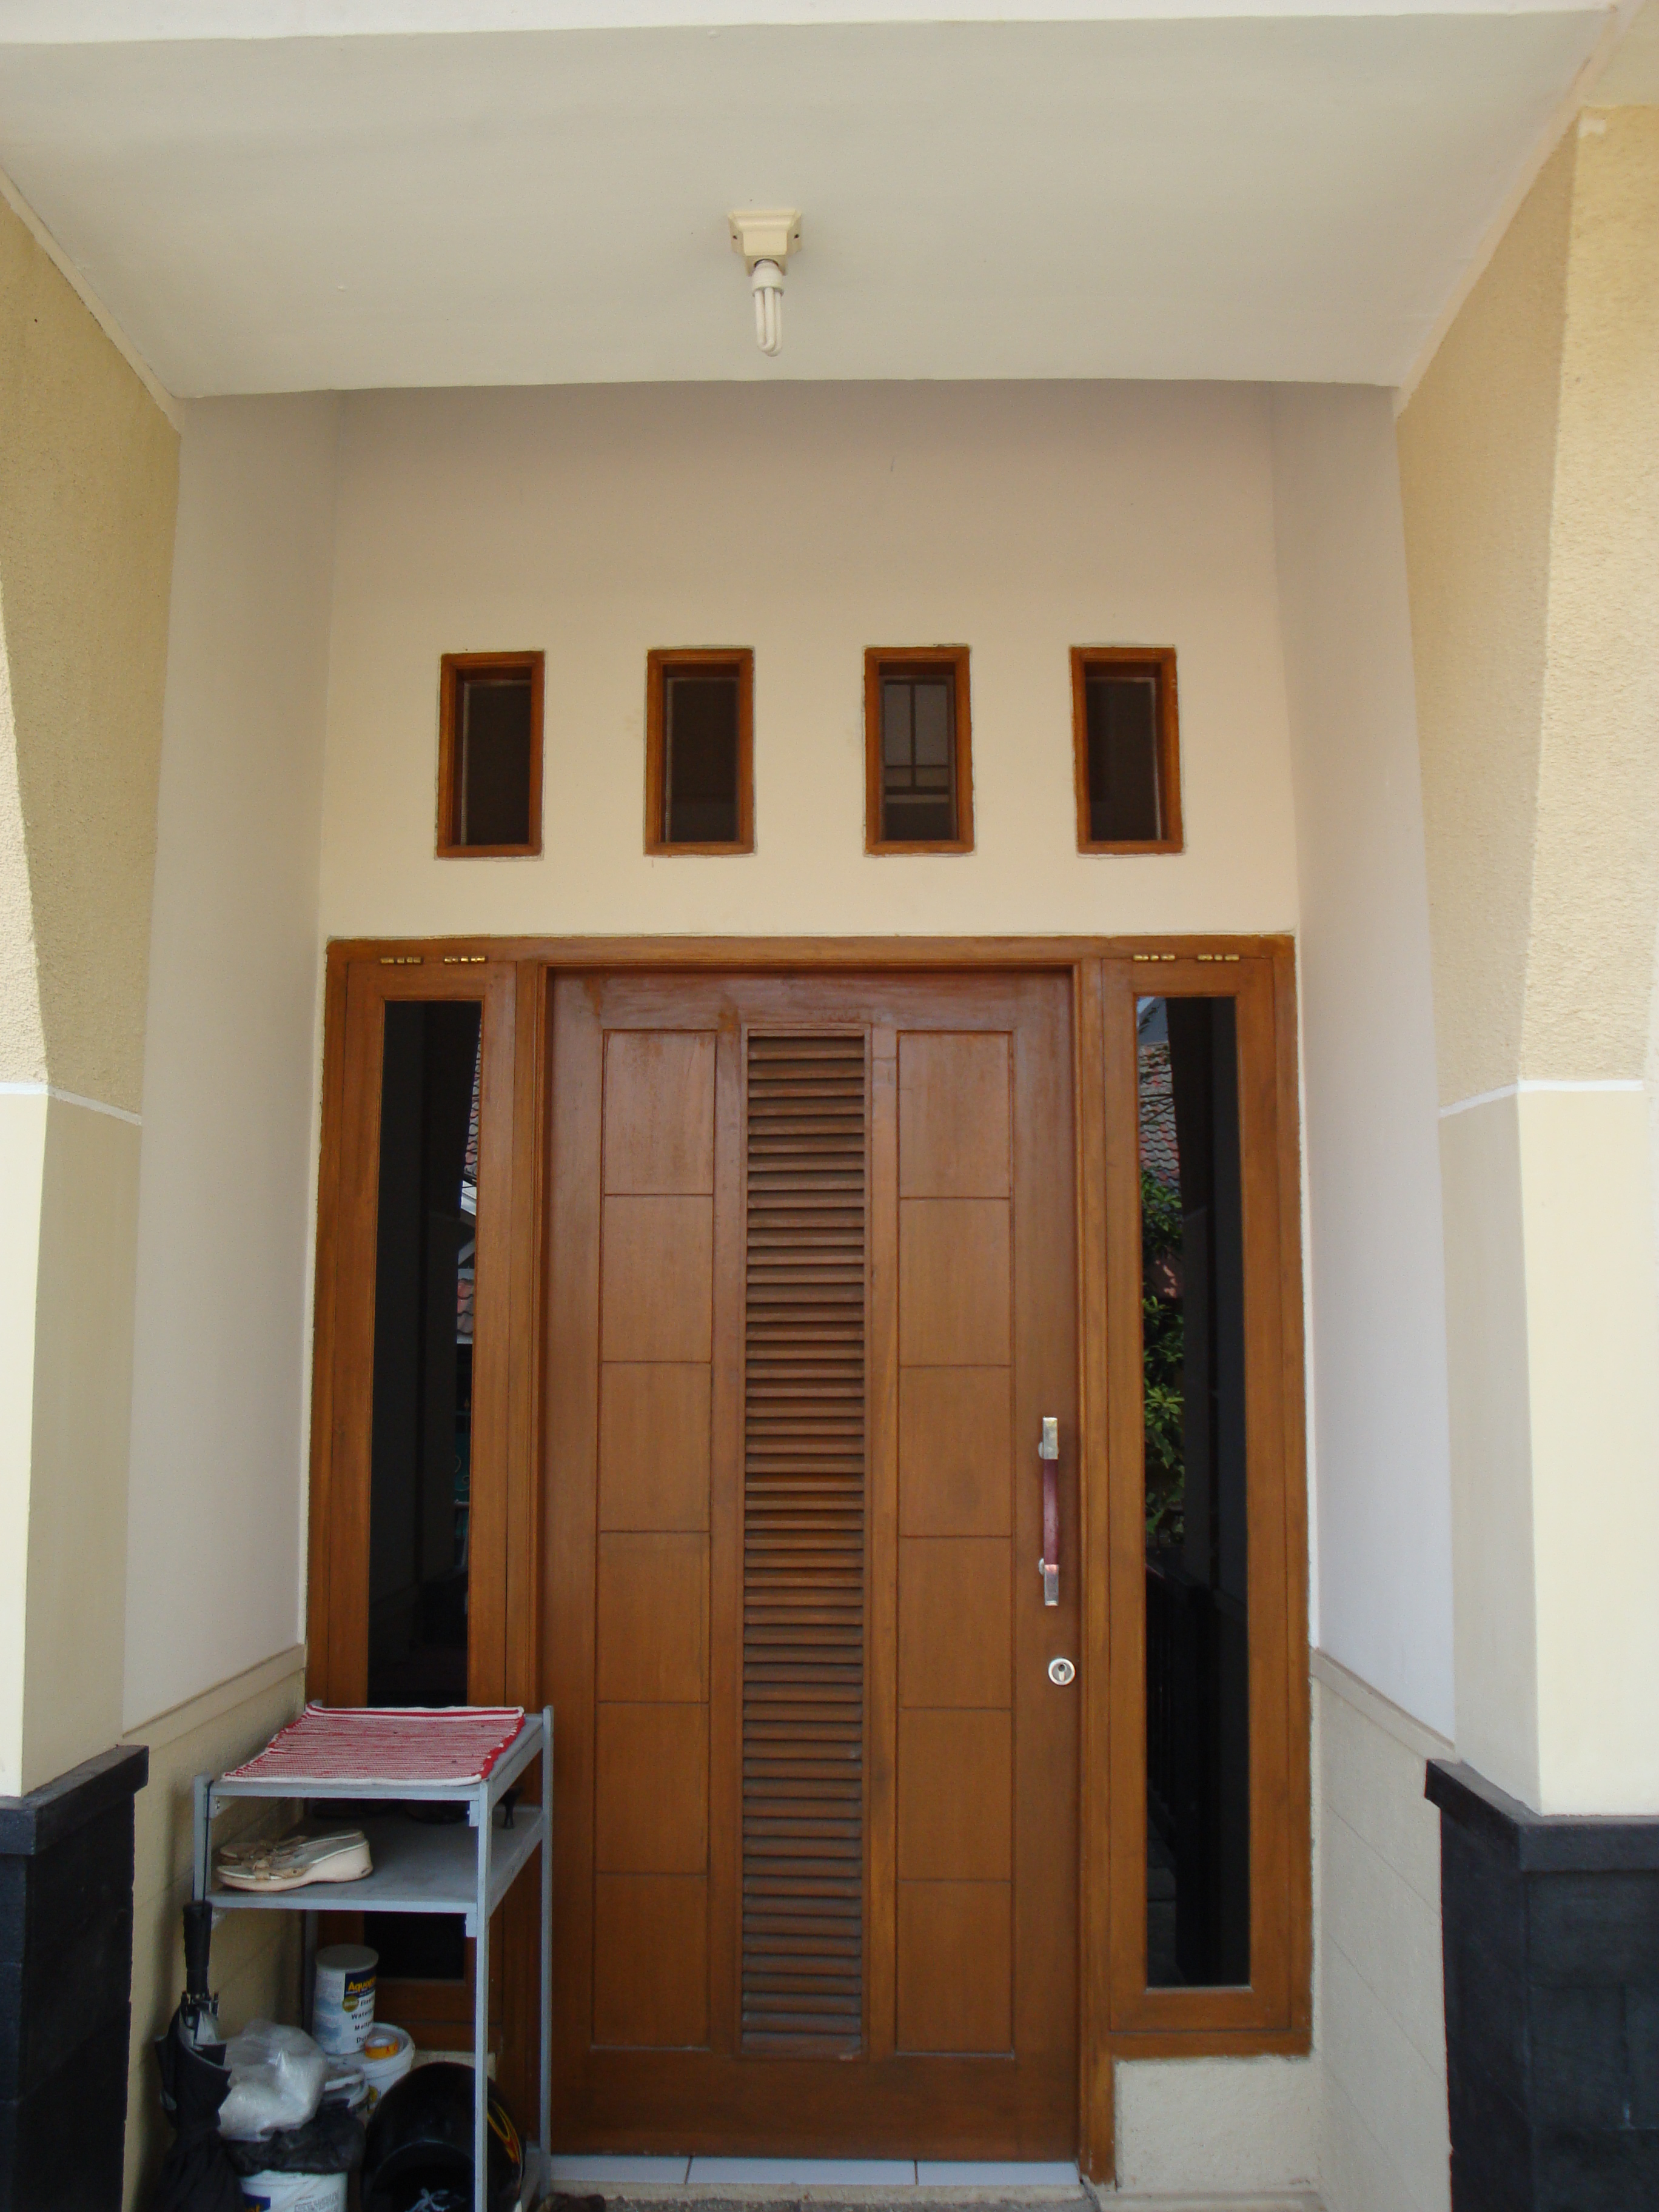 Desain Pintu Rumah Minimalis Sederhana Sobat Interior Rumah